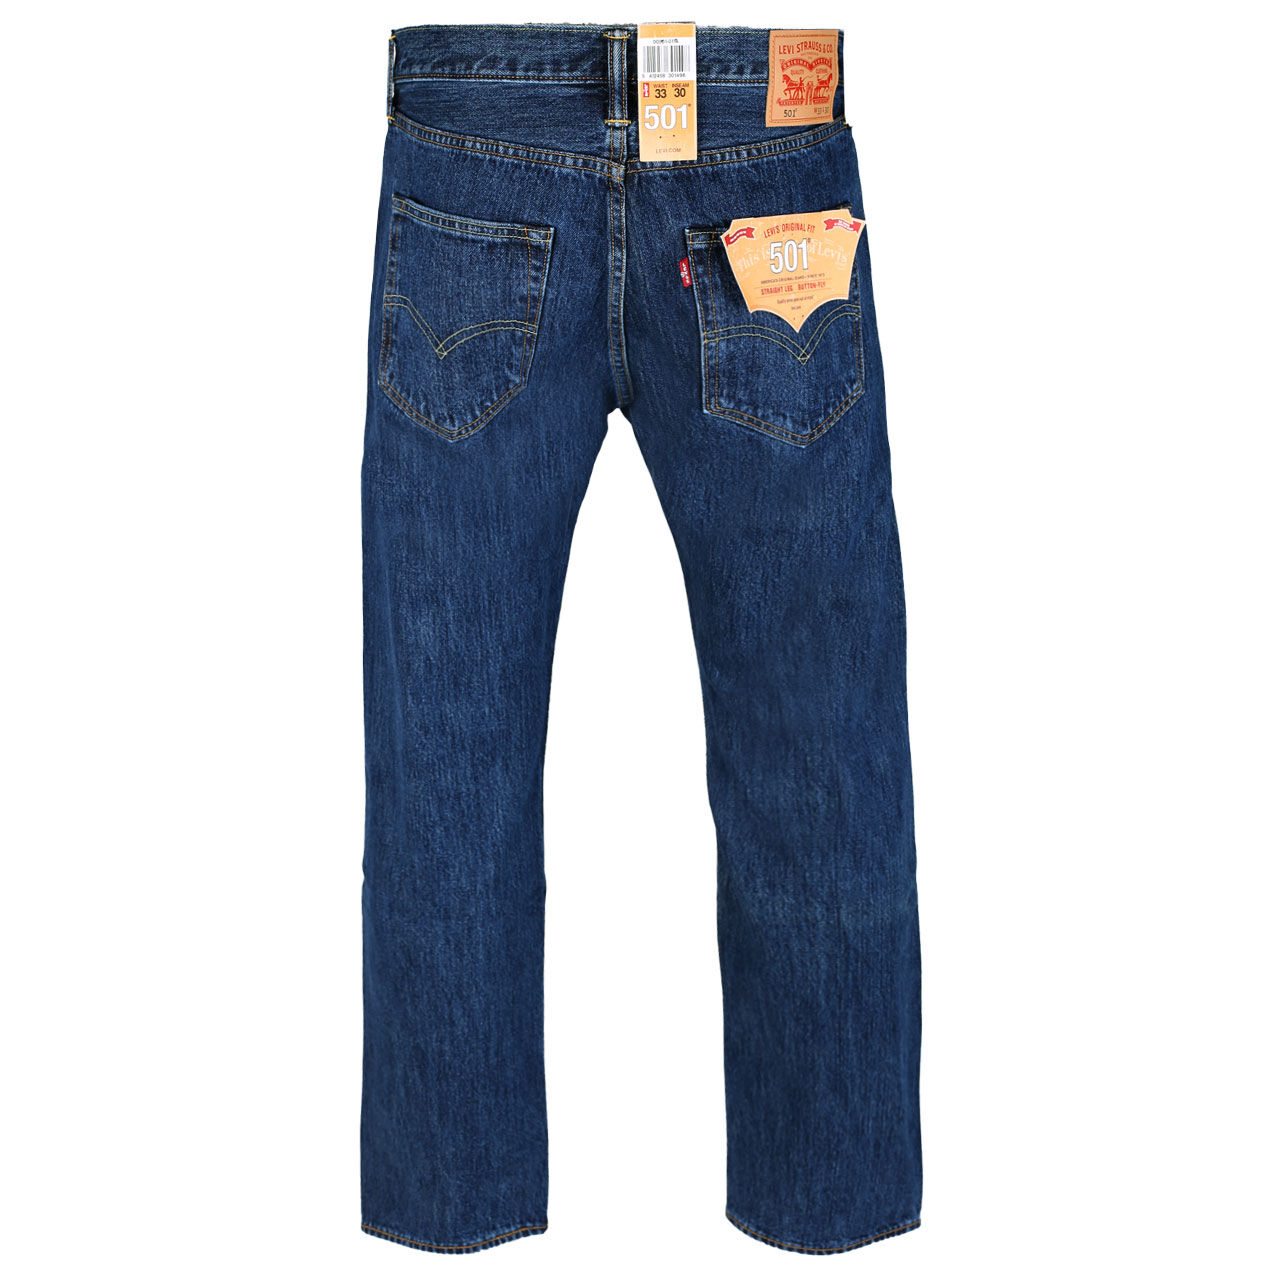 Levis Jeans 501 für Herren in Blau, FarbNr.: 0114